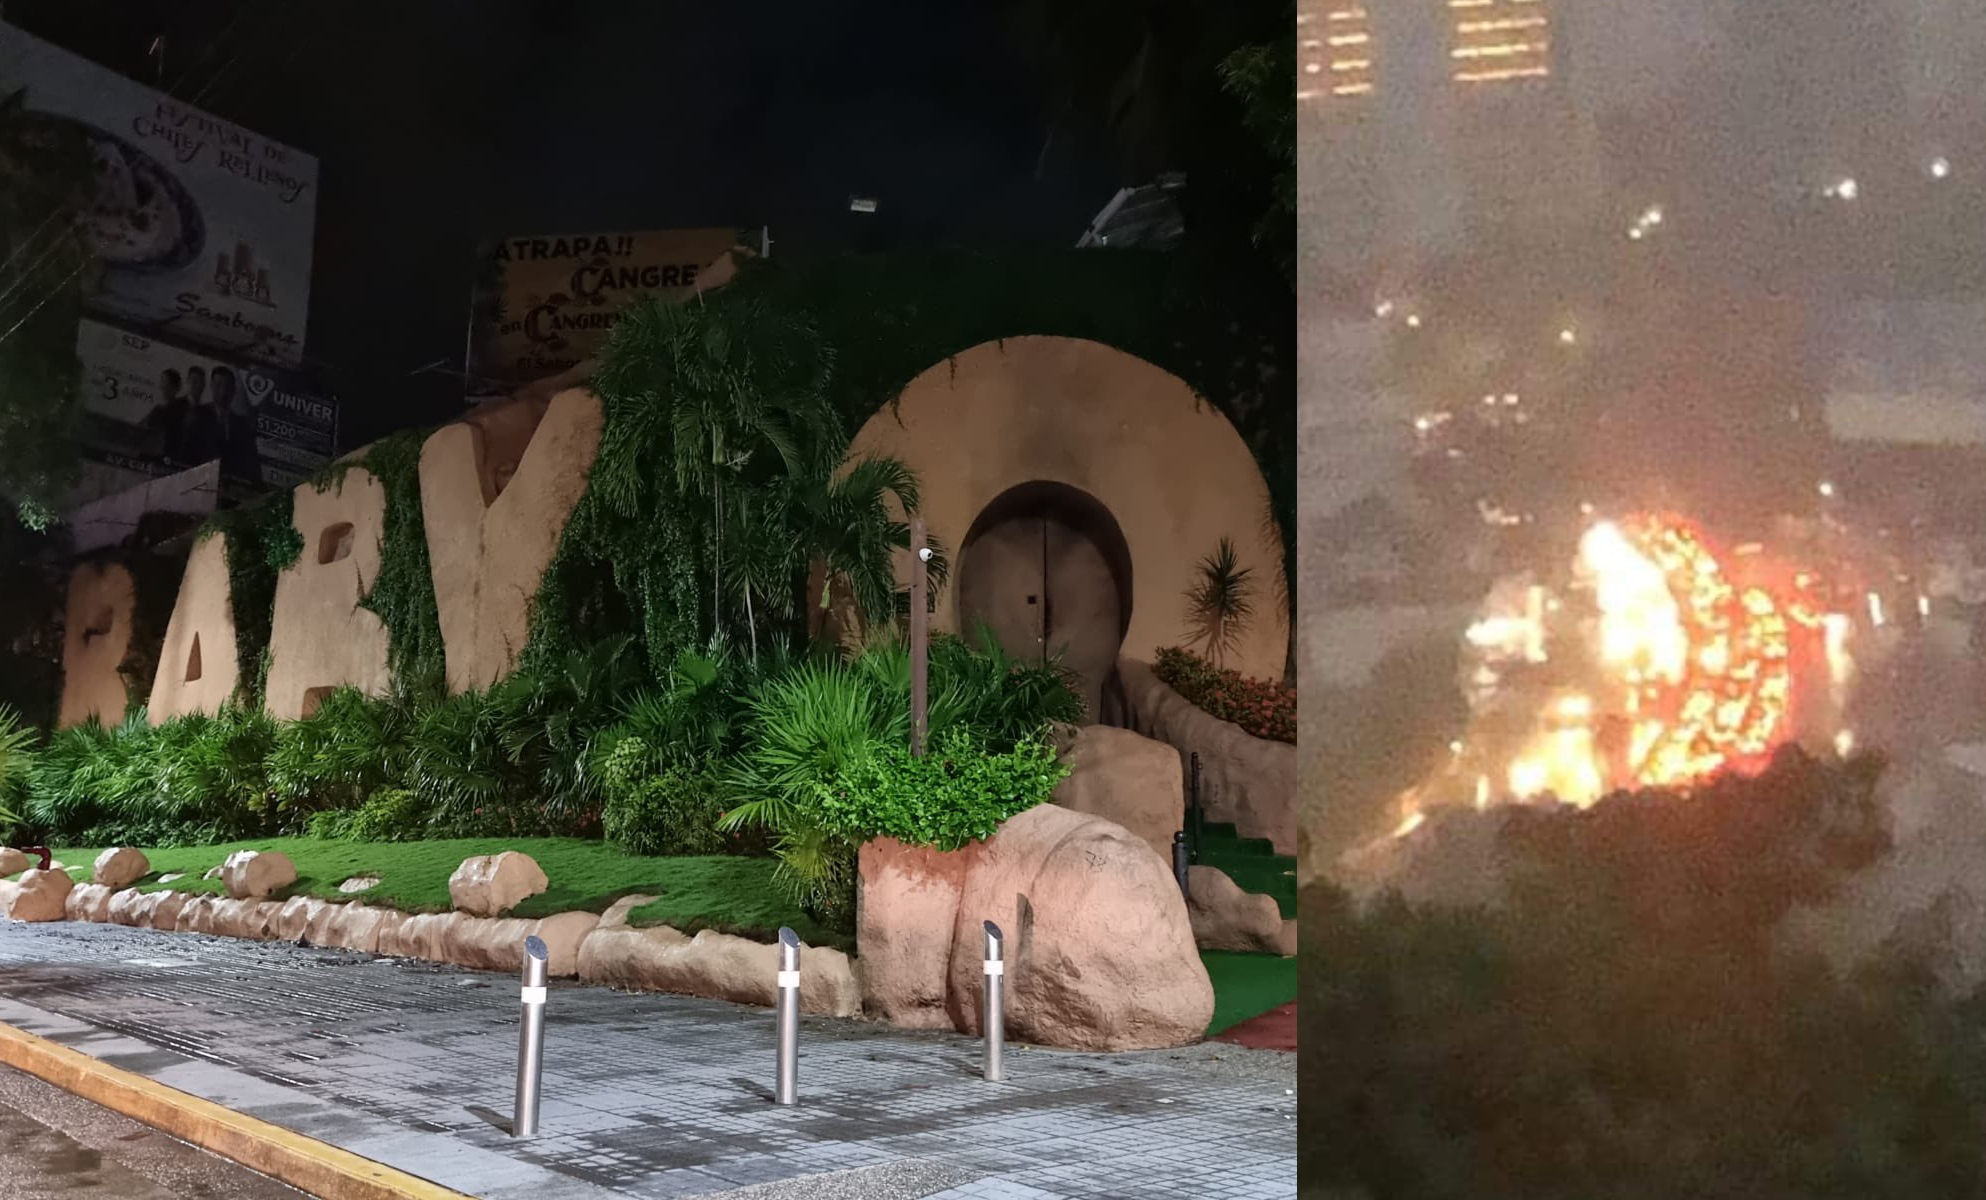 La noche de este miércoles hubo un incendio en el lugar. (Fotos: Twitter @hbdaoficial y @impactomich)